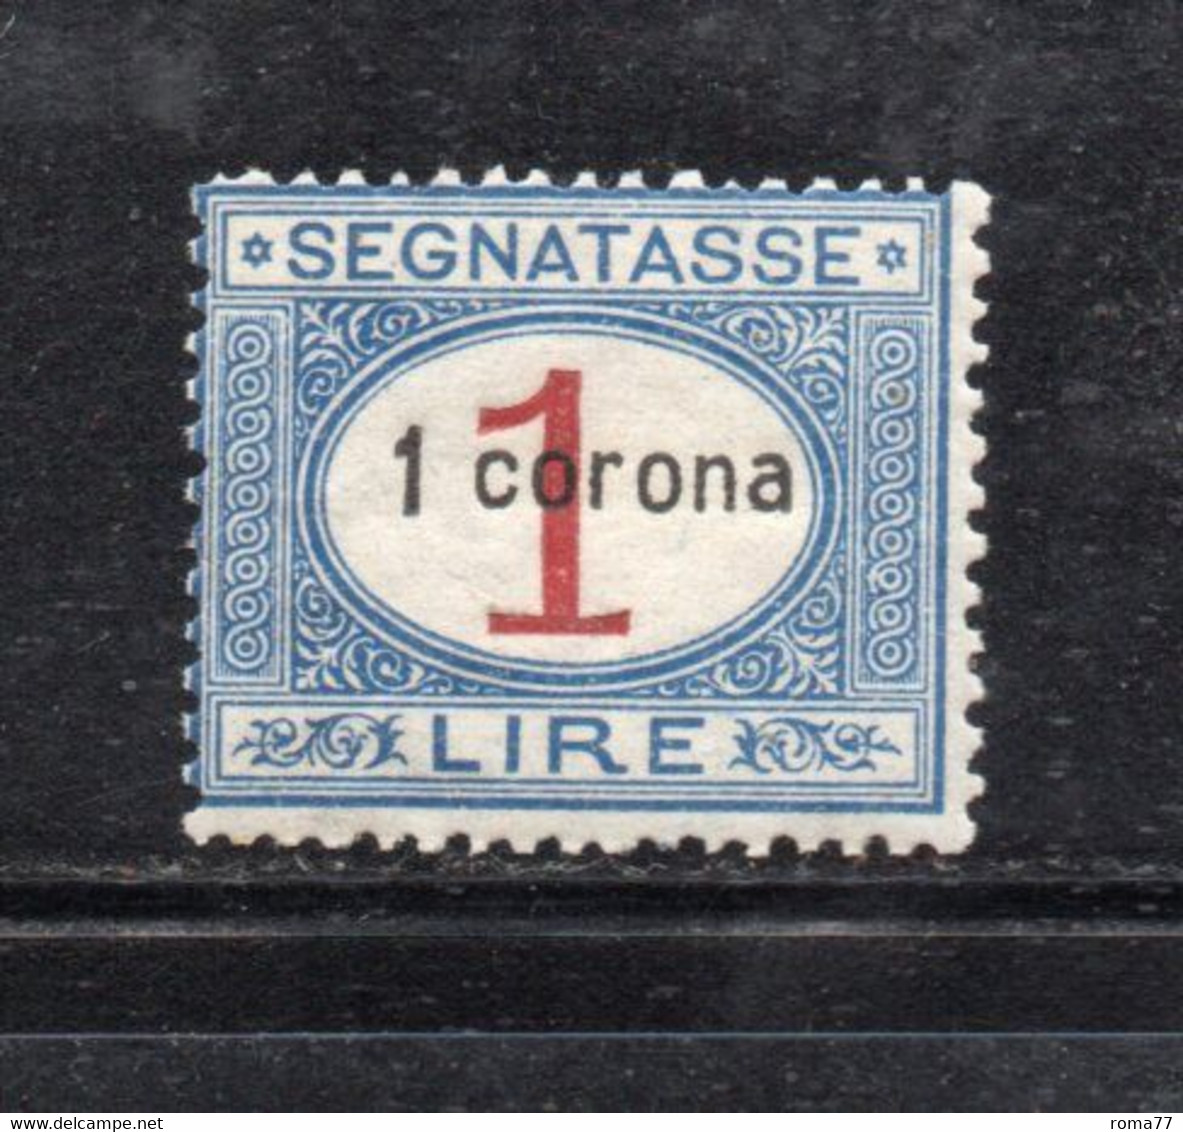 Y2352 - DALMAZIA 1922, Segnatasse Il N. 2  Con Gomma Integra  ***  MNH - Dalmatien